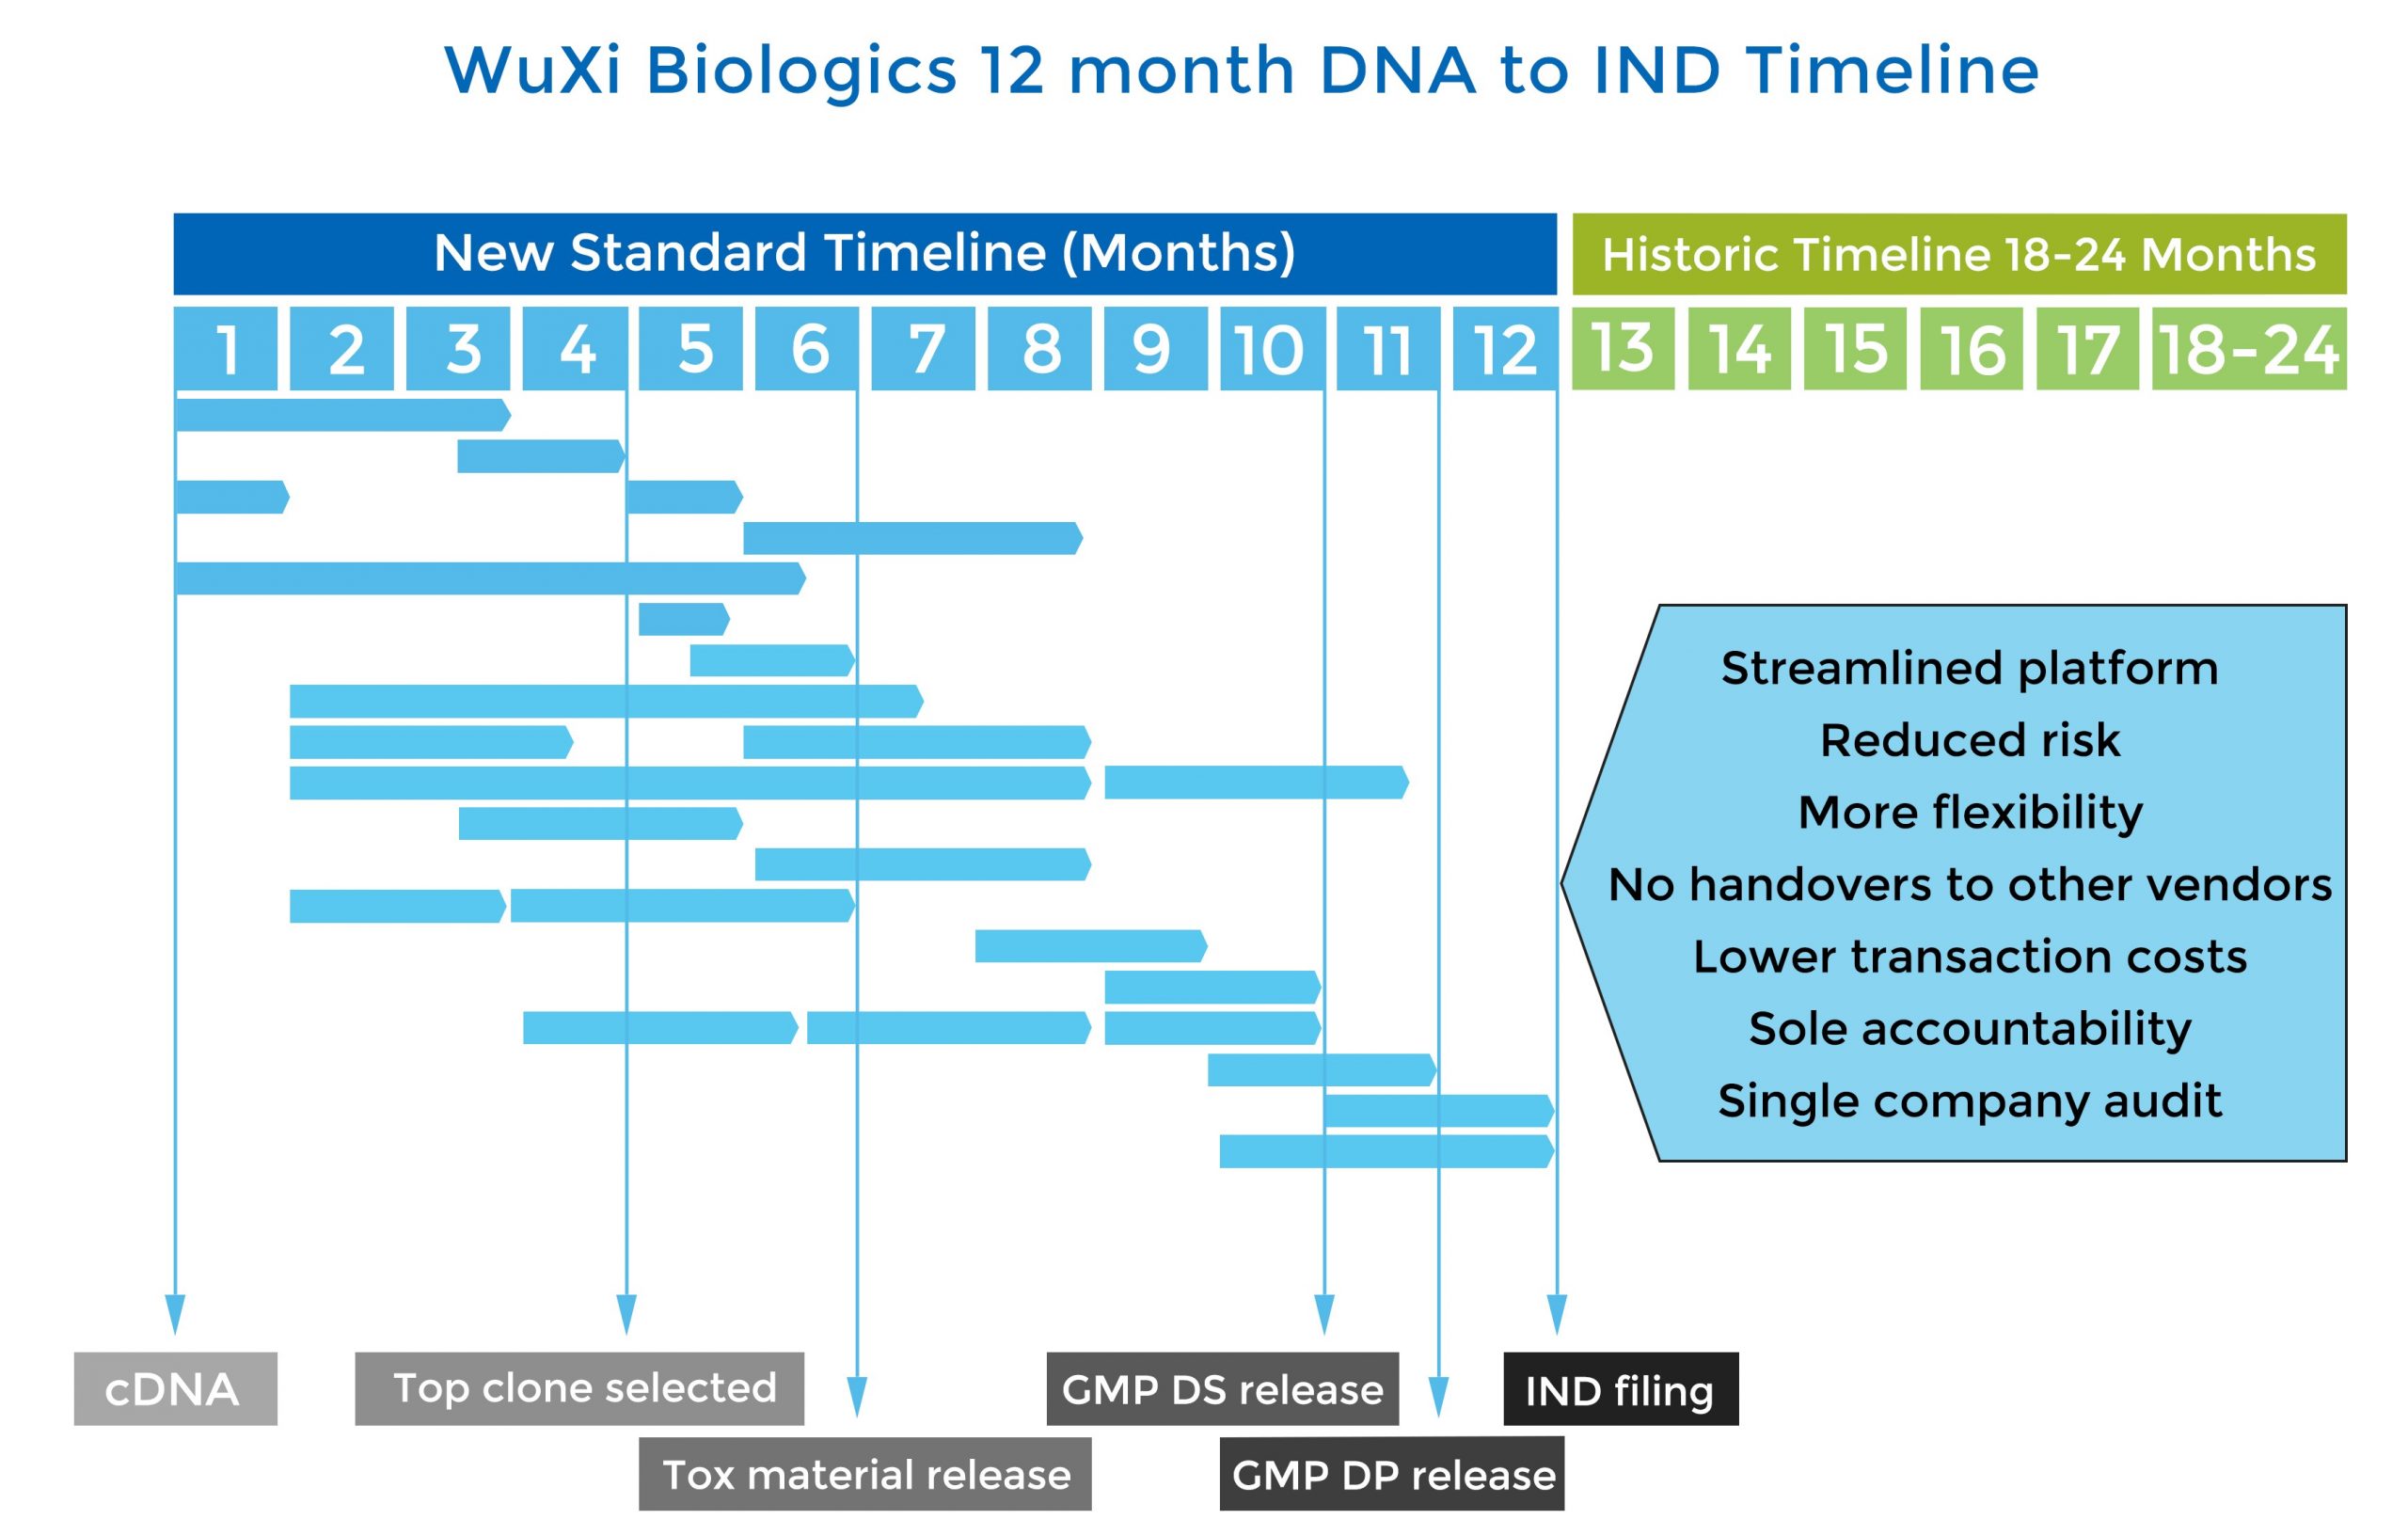 WuXI Biologics 12 month DNA to IND Timeline